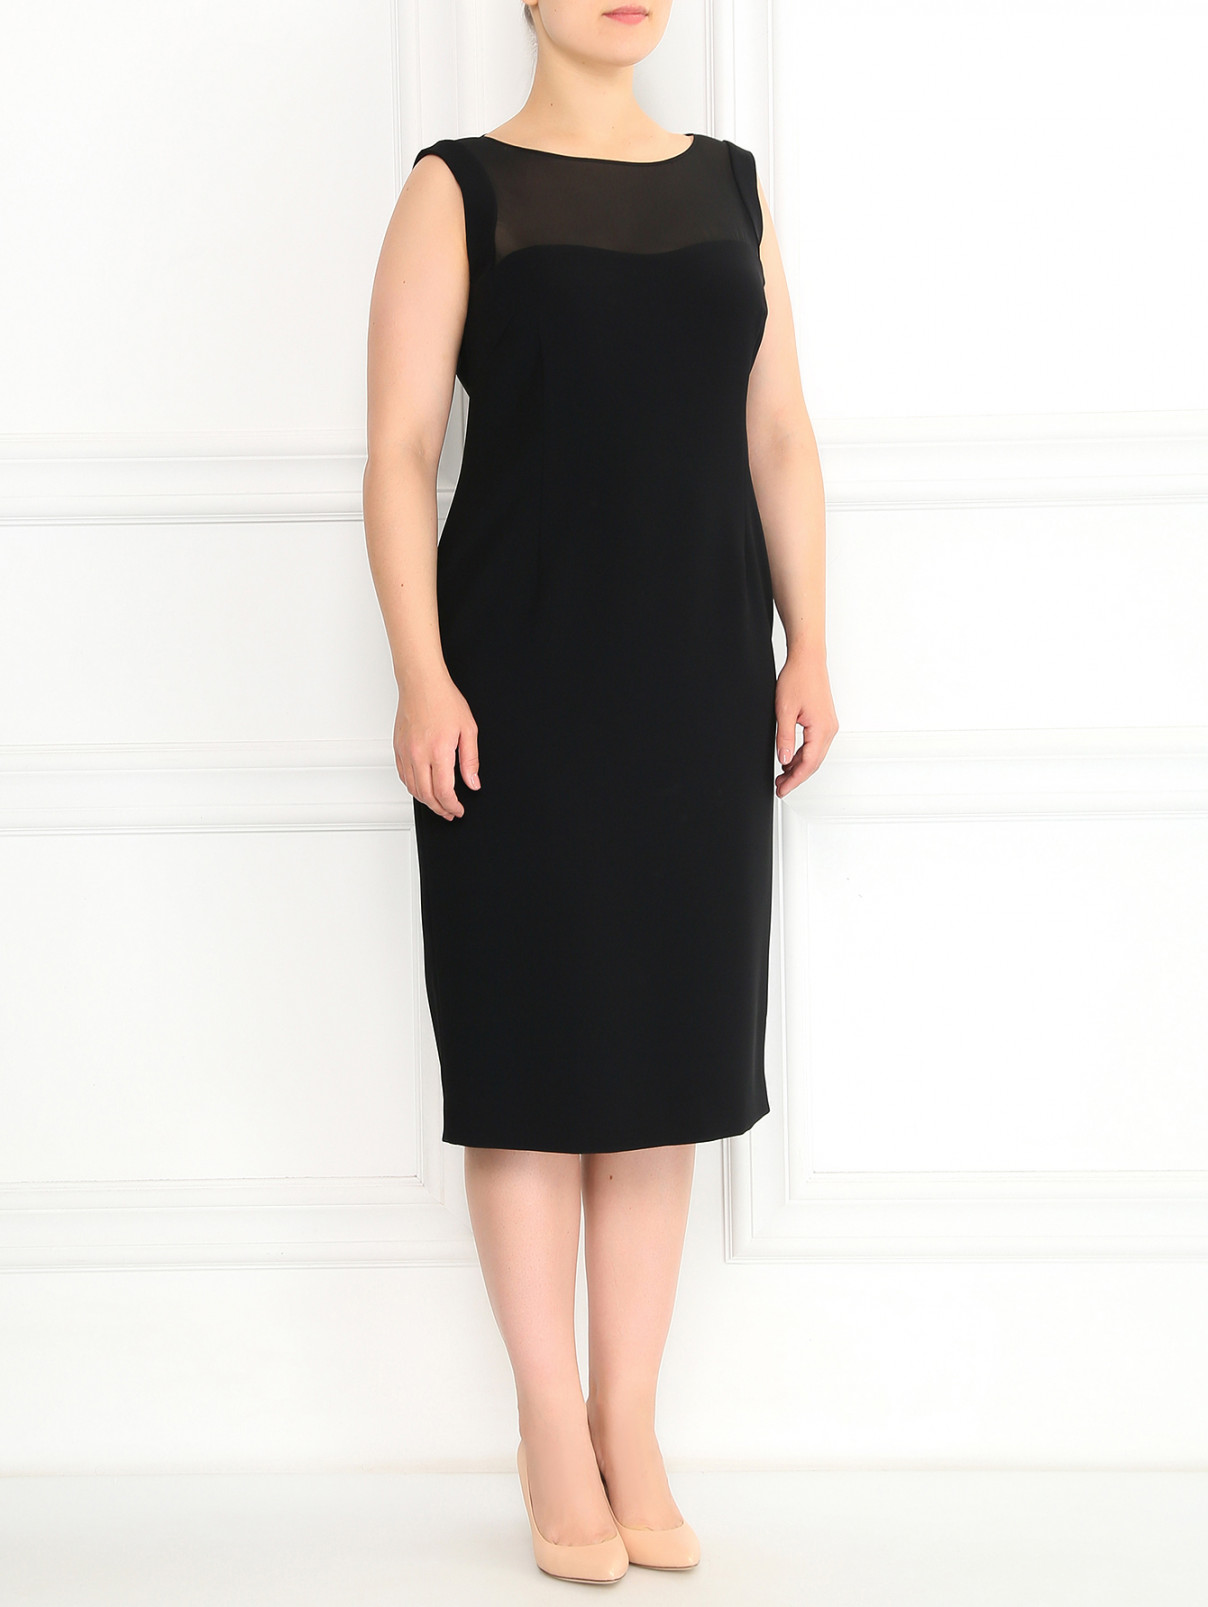 Платье-футляр с прозрачной вставкой Marina Rinaldi  –  Модель Общий вид  – Цвет:  Черный